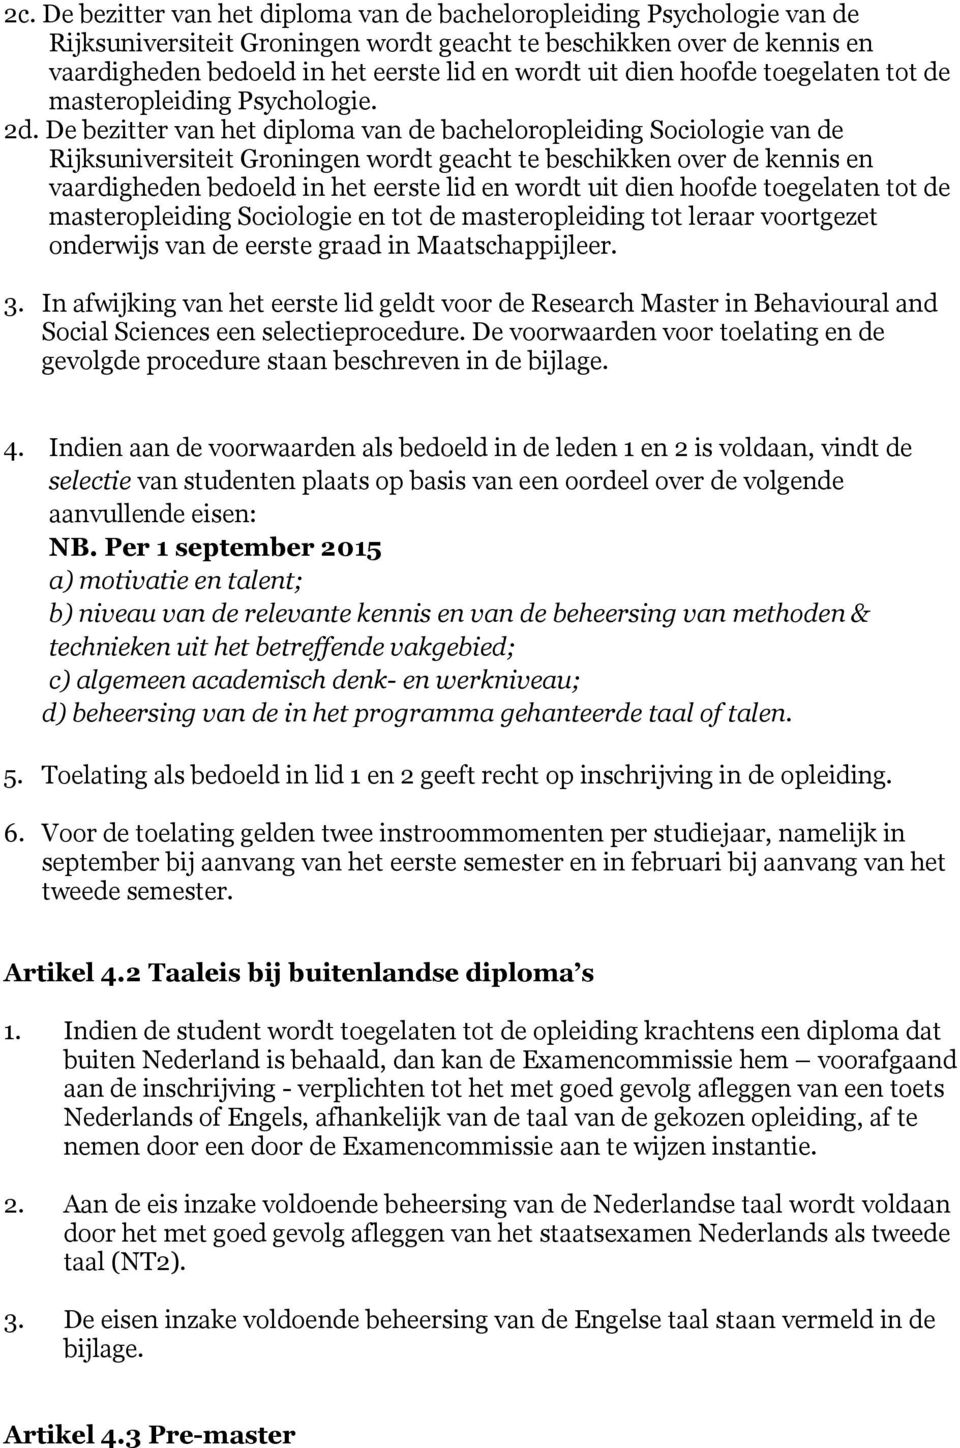 De bezitter van het diploma van de bacheloropleiding Sociologie van de Rijksuniversiteit Groningen wordt geacht te beschikken over de kennis en vaardigheden bedoeld in het eerste lid en wordt uit